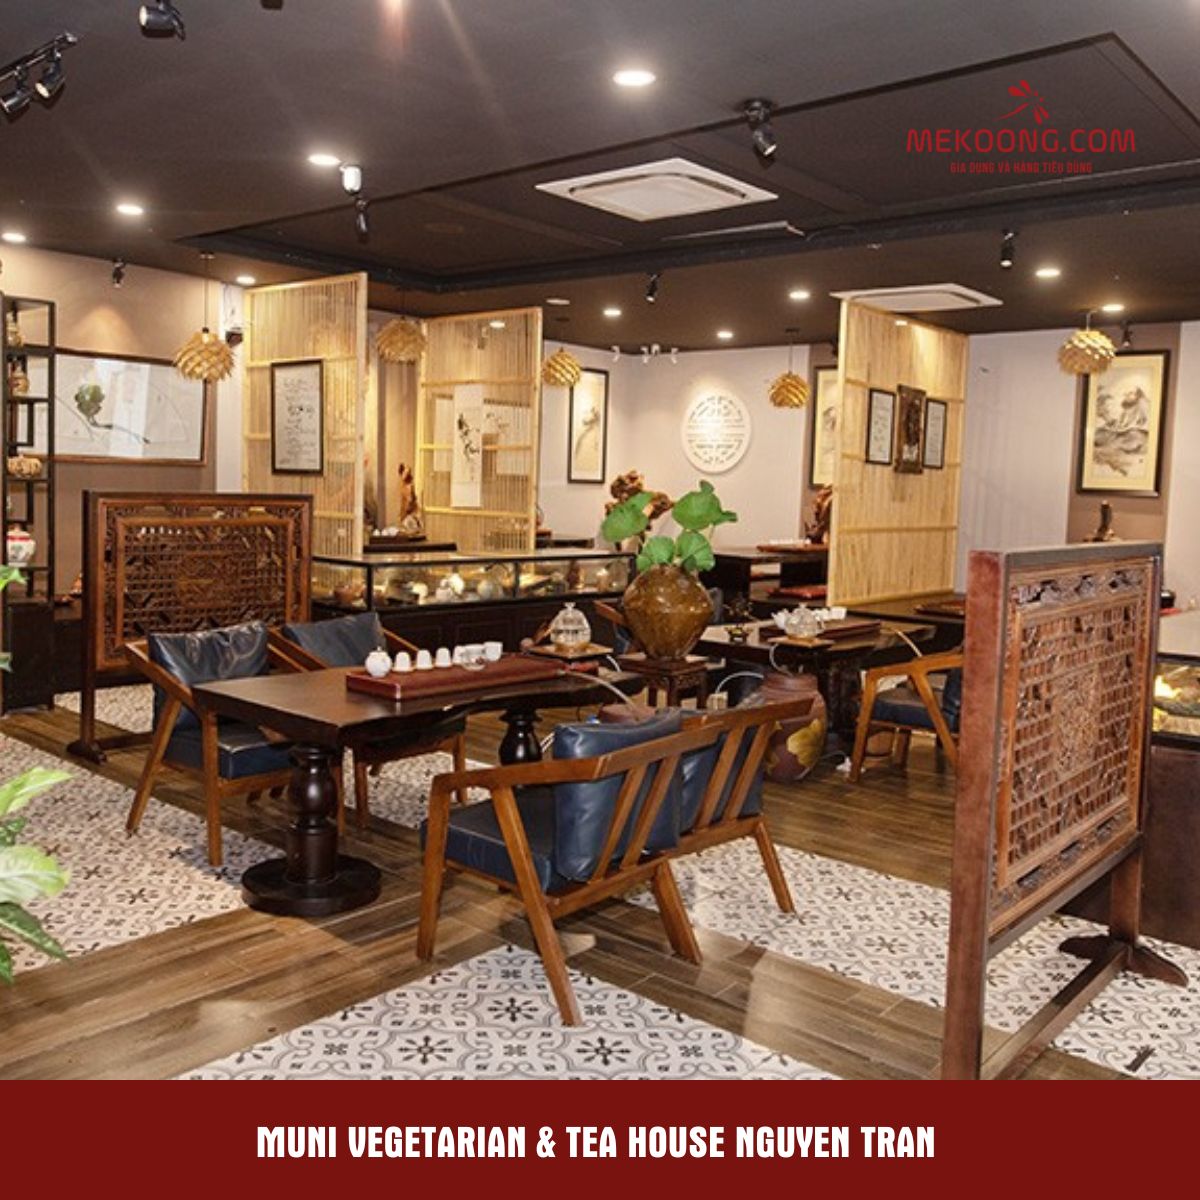 Muni Vegetarian & Tea house Nguyen Tran